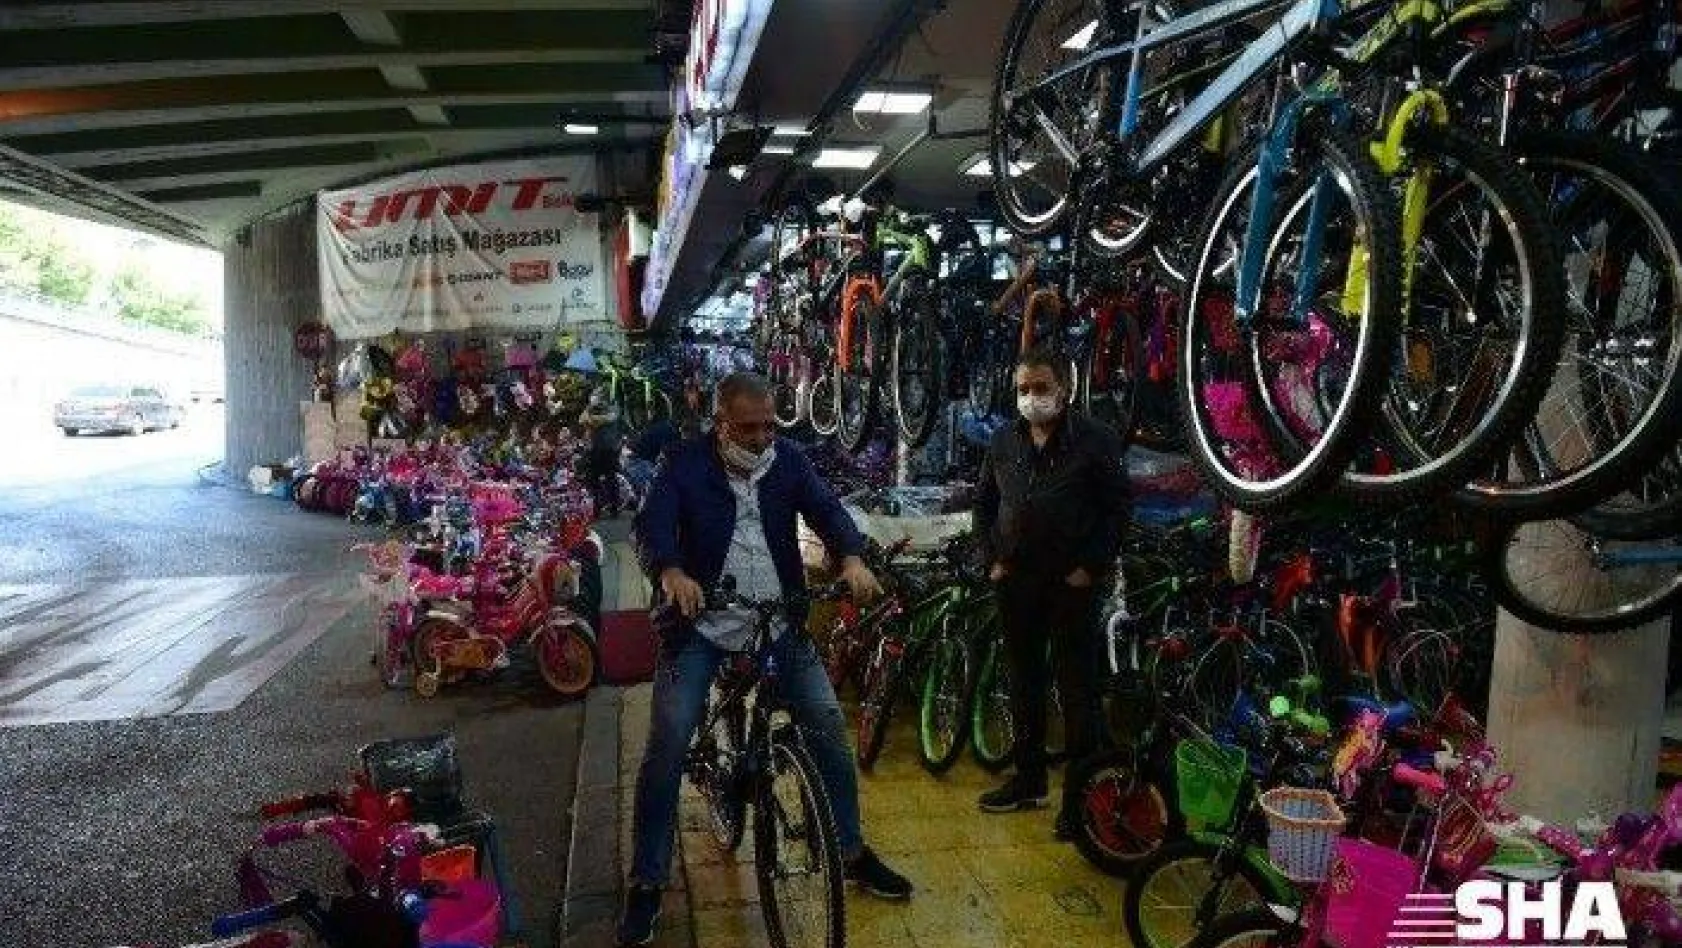 Korona korkusuyla bisiklet satışları arttı